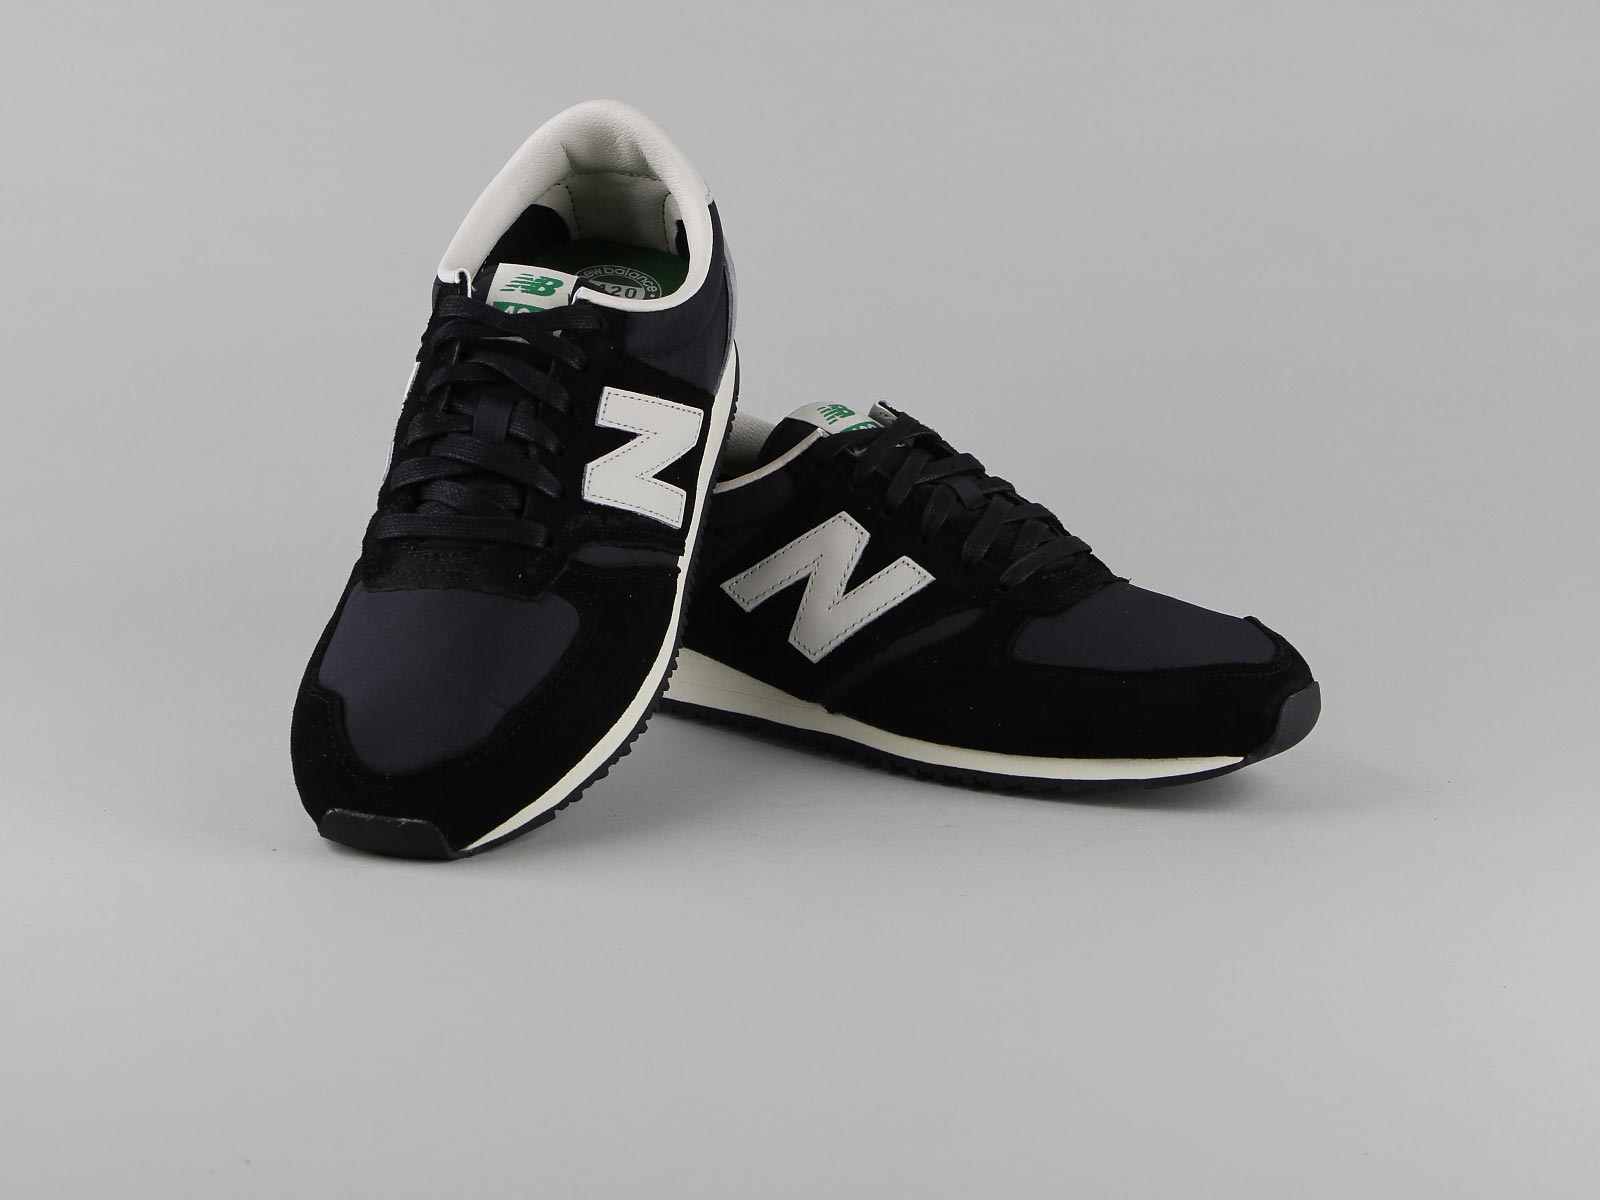 New Balance 420 Chaussures, New Balance U420 - Chaussures Homme - Lacets